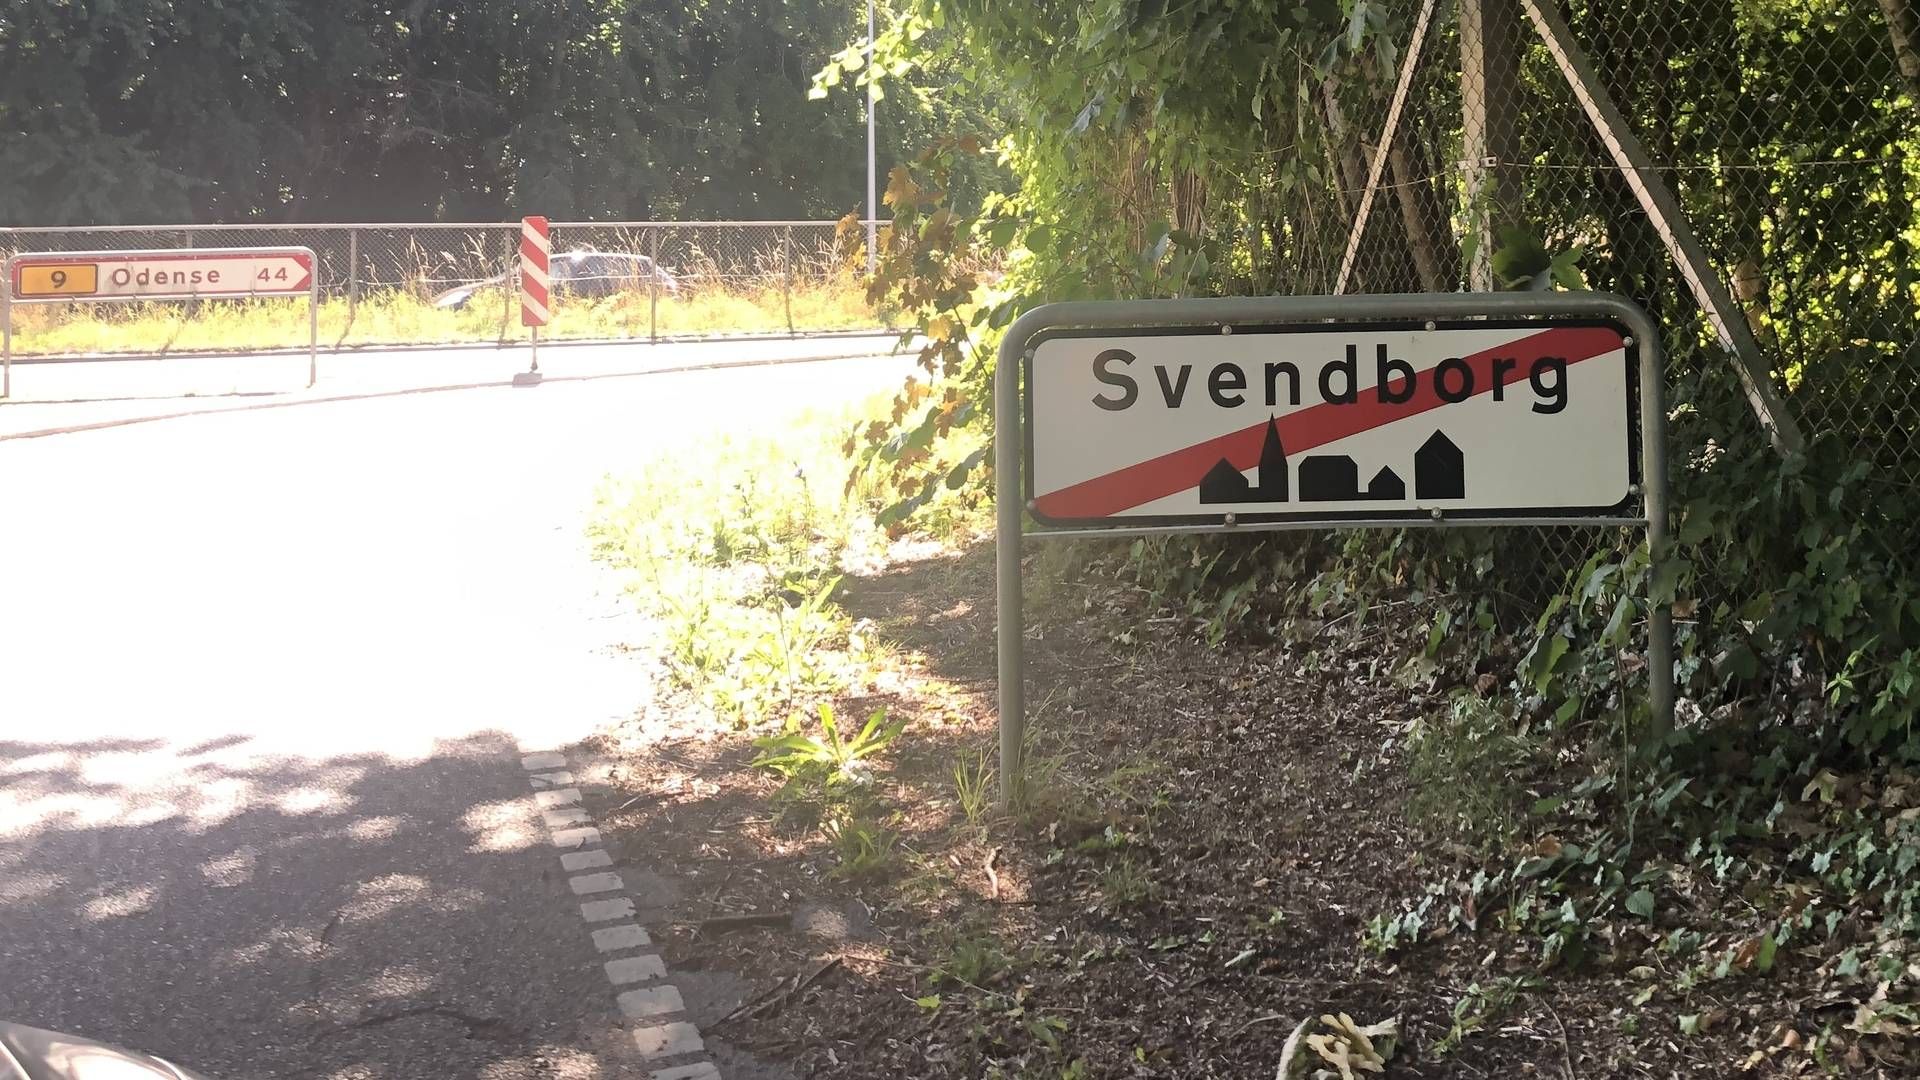 Bertel Rasmussen Advokater i Svendborg er gået konkurs efter svindelsag. | Foto: Steffen Moses/Watch Medier